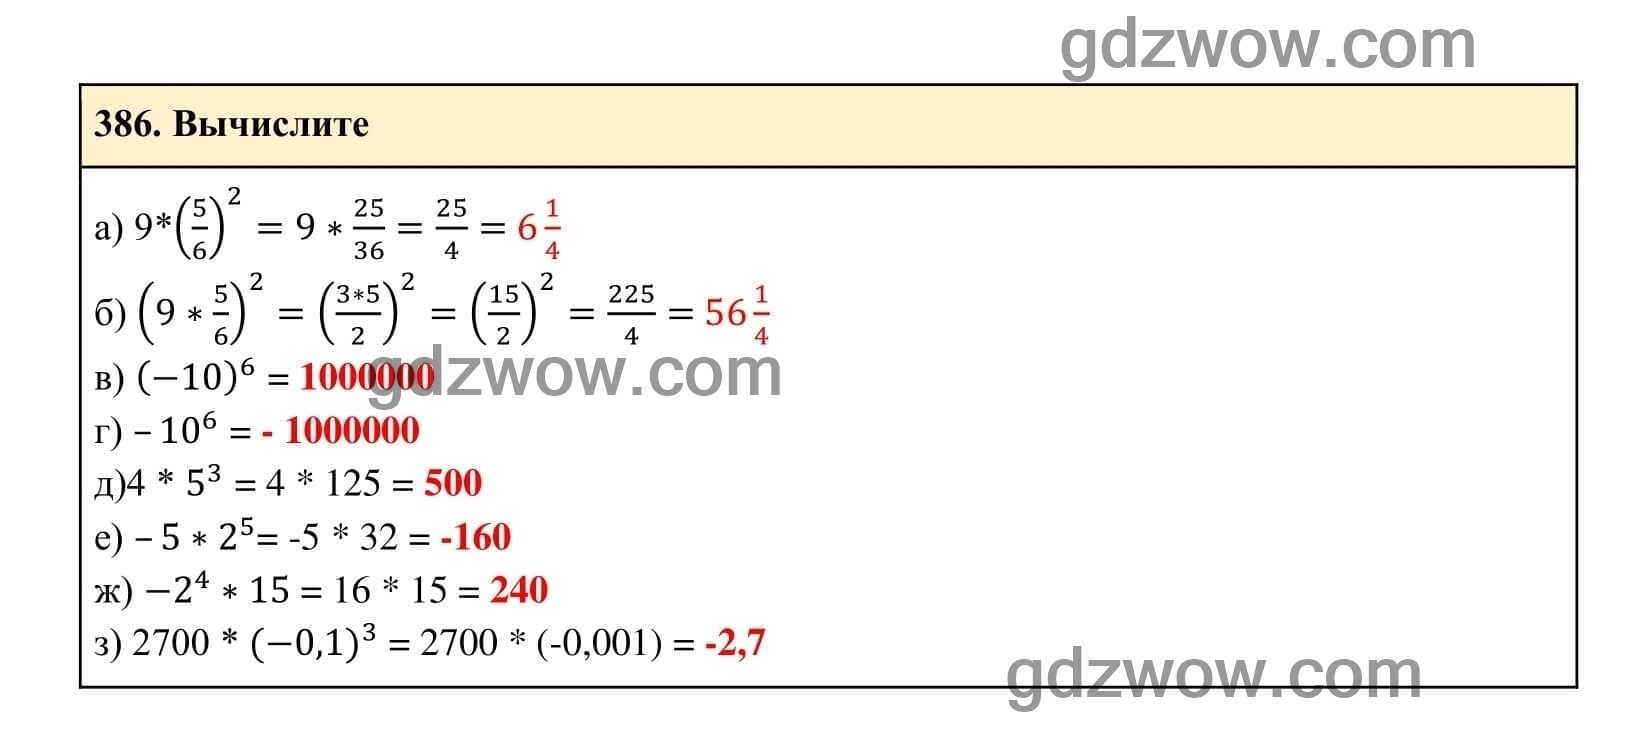 Упражнение 386 - ГДЗ по Алгебре 7 класс Учебник Макарычев (решебник) - GDZwow